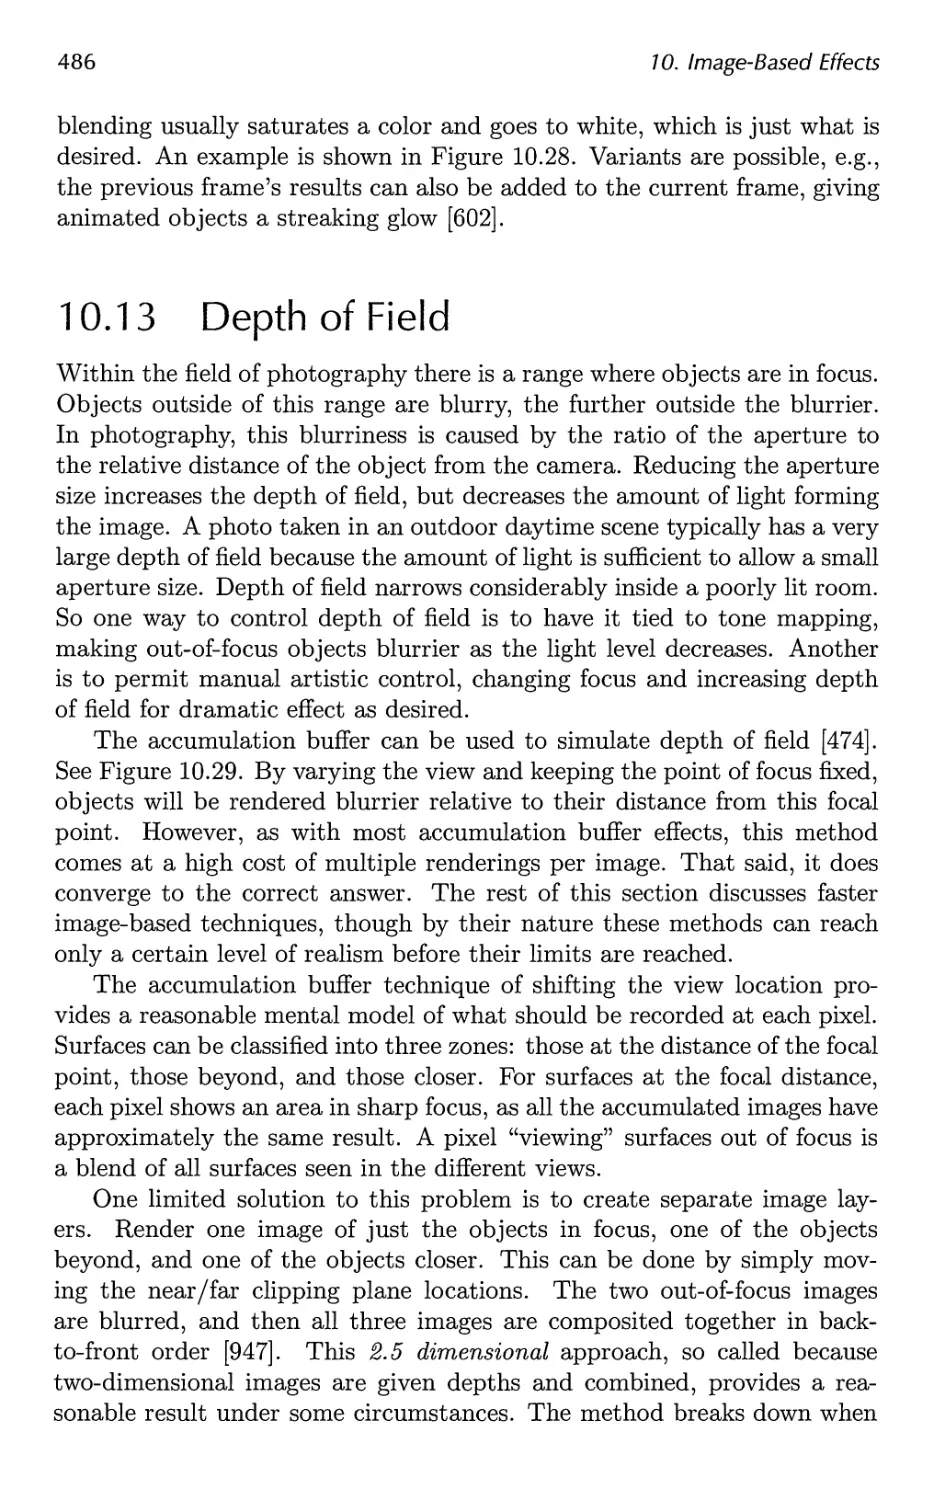 10.13 Depth of Field